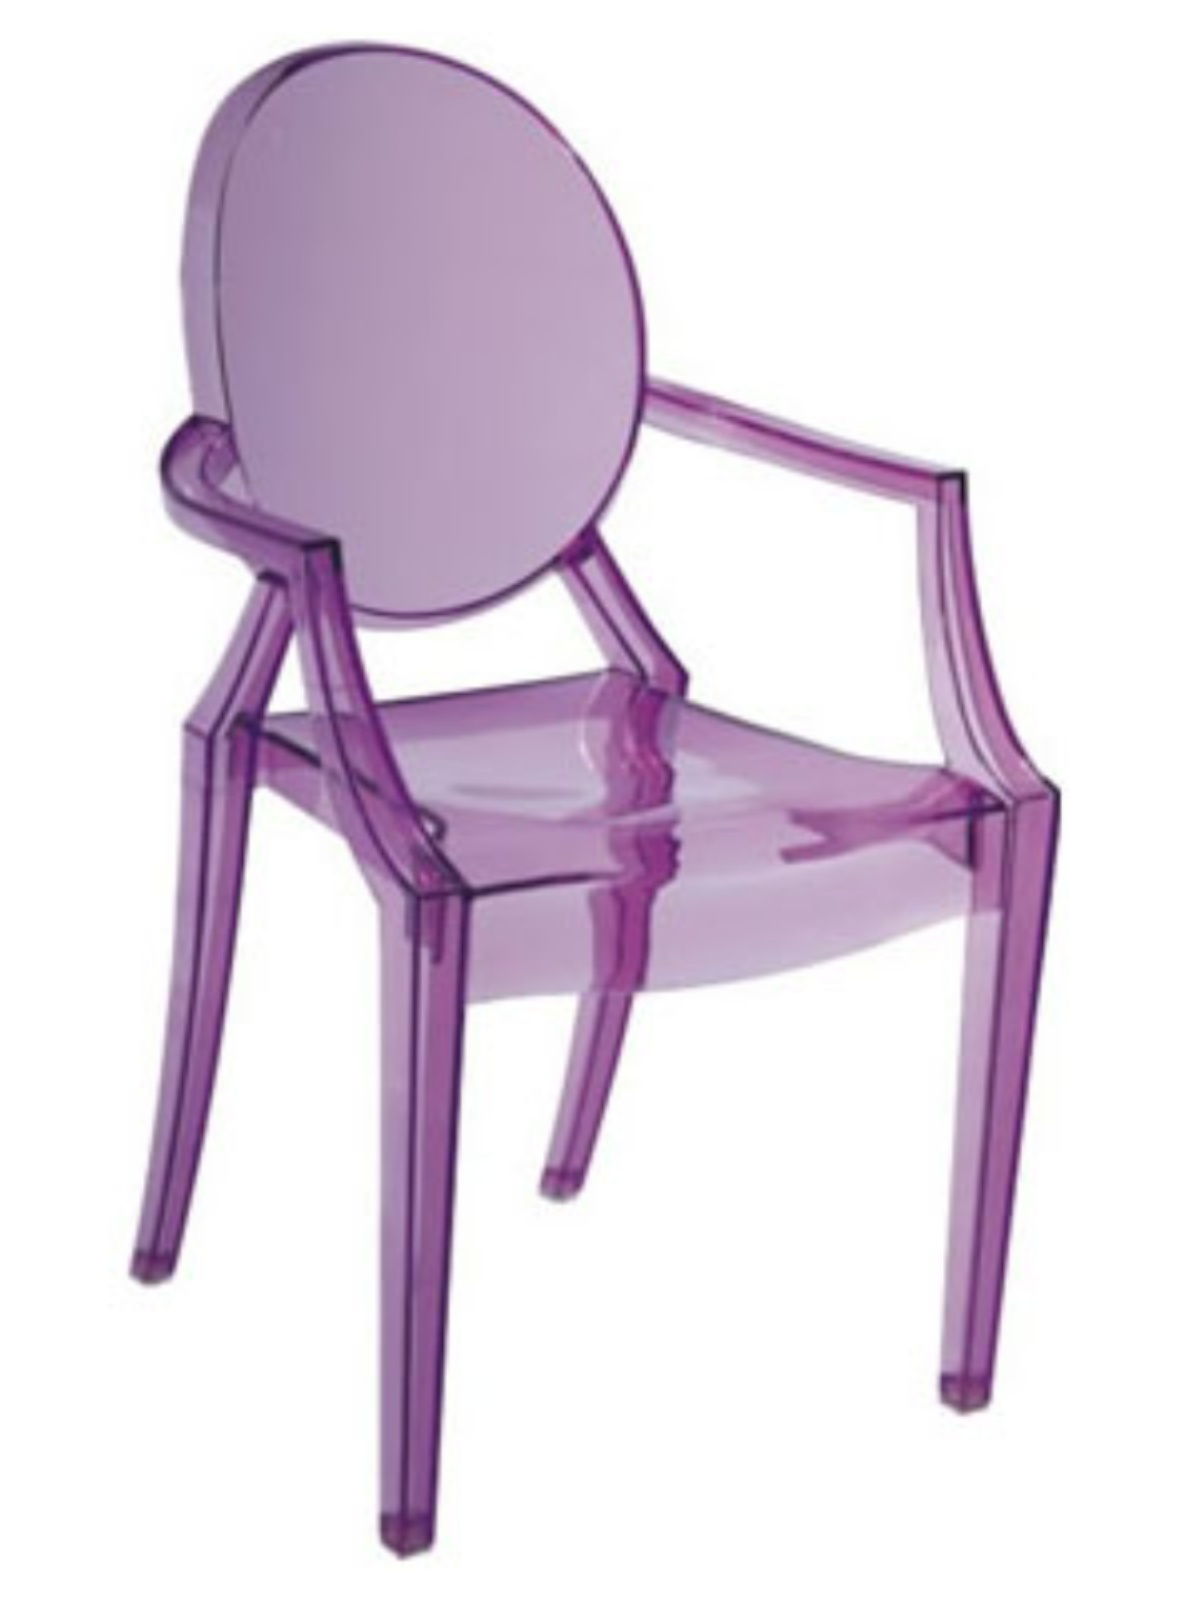 魔鬼椅北欧现代简约儿童家具新潮透明扶手餐椅靠背椅幼儿园用椅